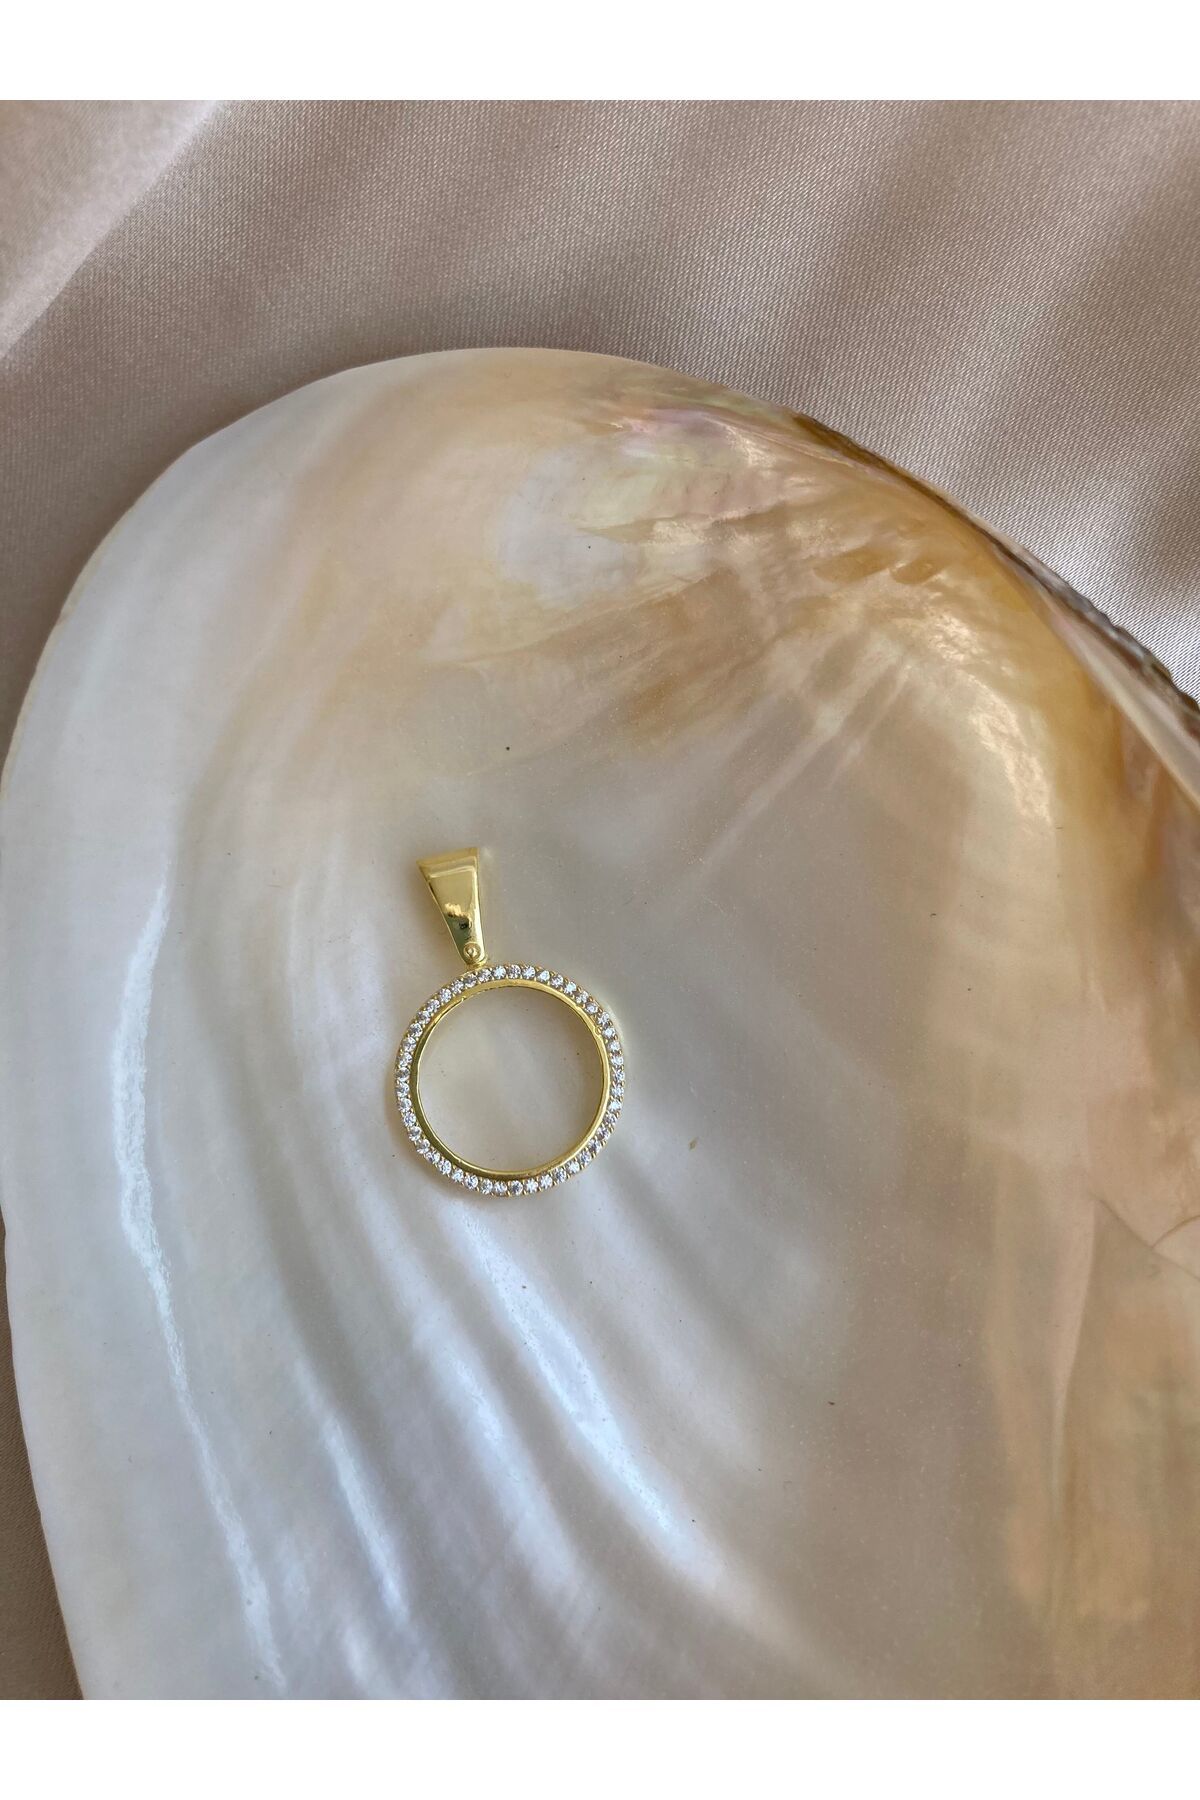 Aurora Jewelry Beyaz Altın Kaplama Çeyrek Altın Çerçevesi Kolye Ucu -925 Ayar Gümüş- Özel Günler